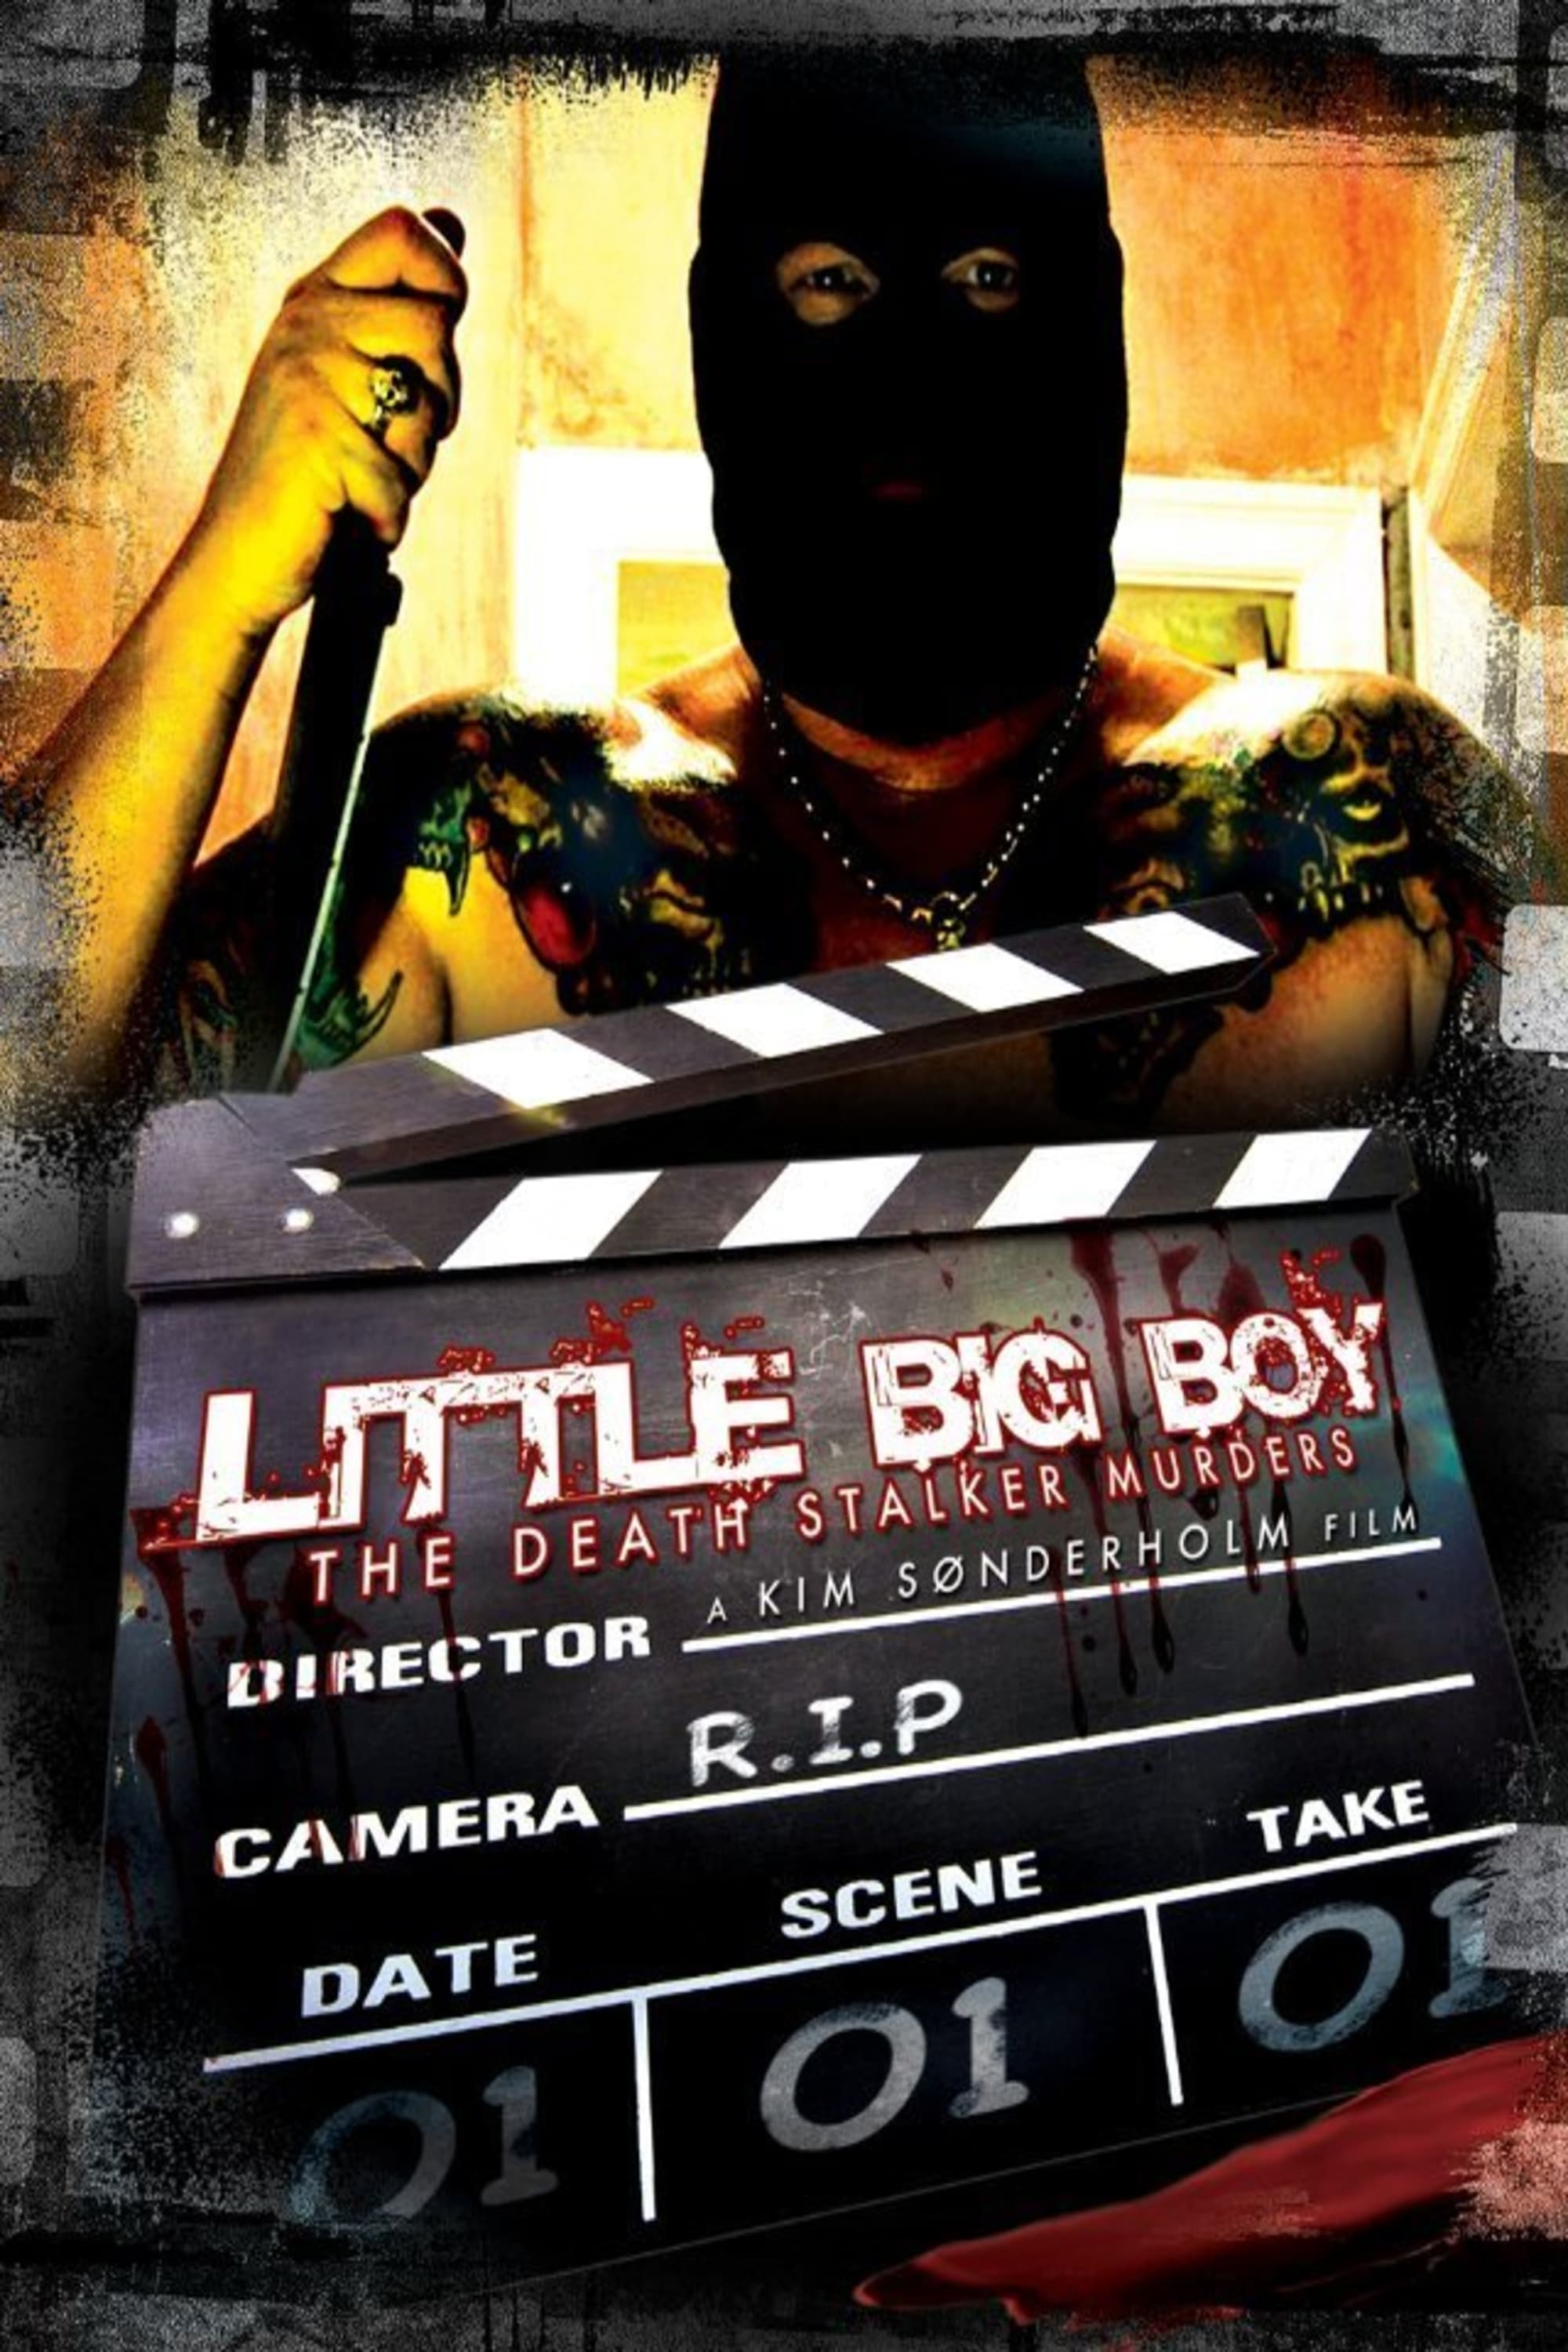 Little Big Boy (2010)